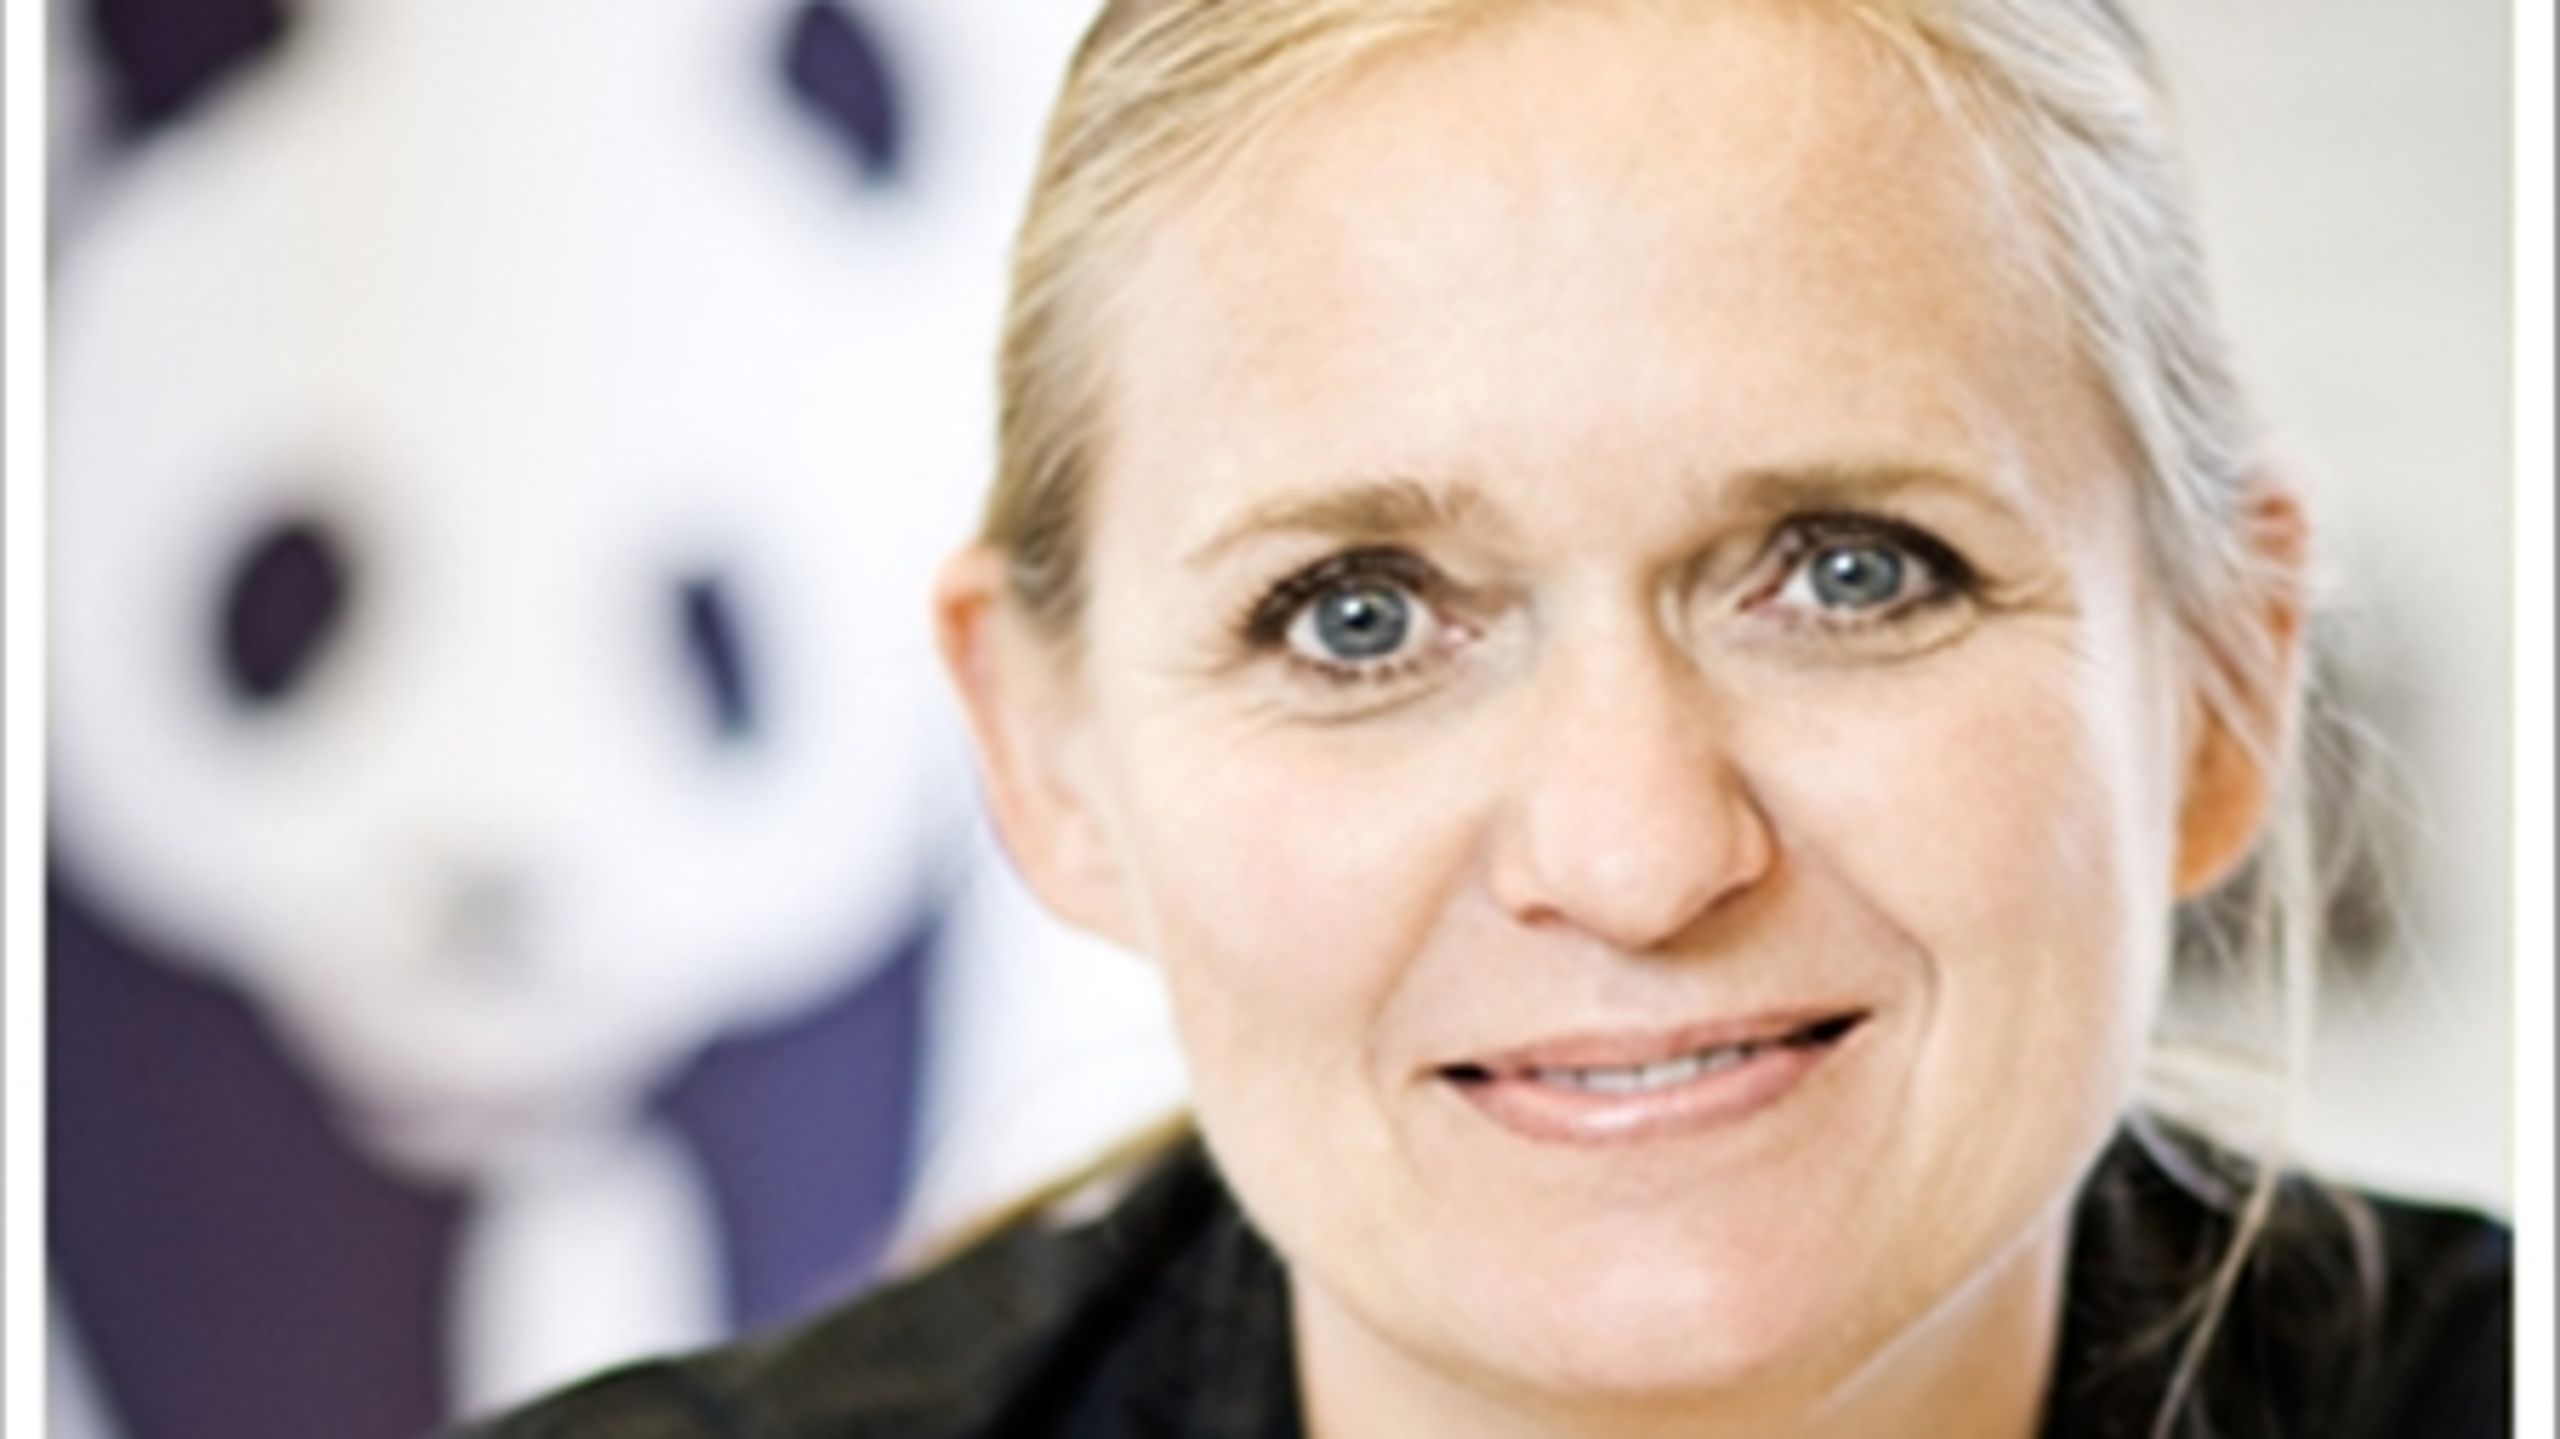 Genrealsekretæren for den danske afdeling af WWF, Gitte Seeberg, optrådte overraskende som opponent til Folkebevægelsen mod EU i en valgudsendelse før europaparlamentsvalget d. 25. maj.